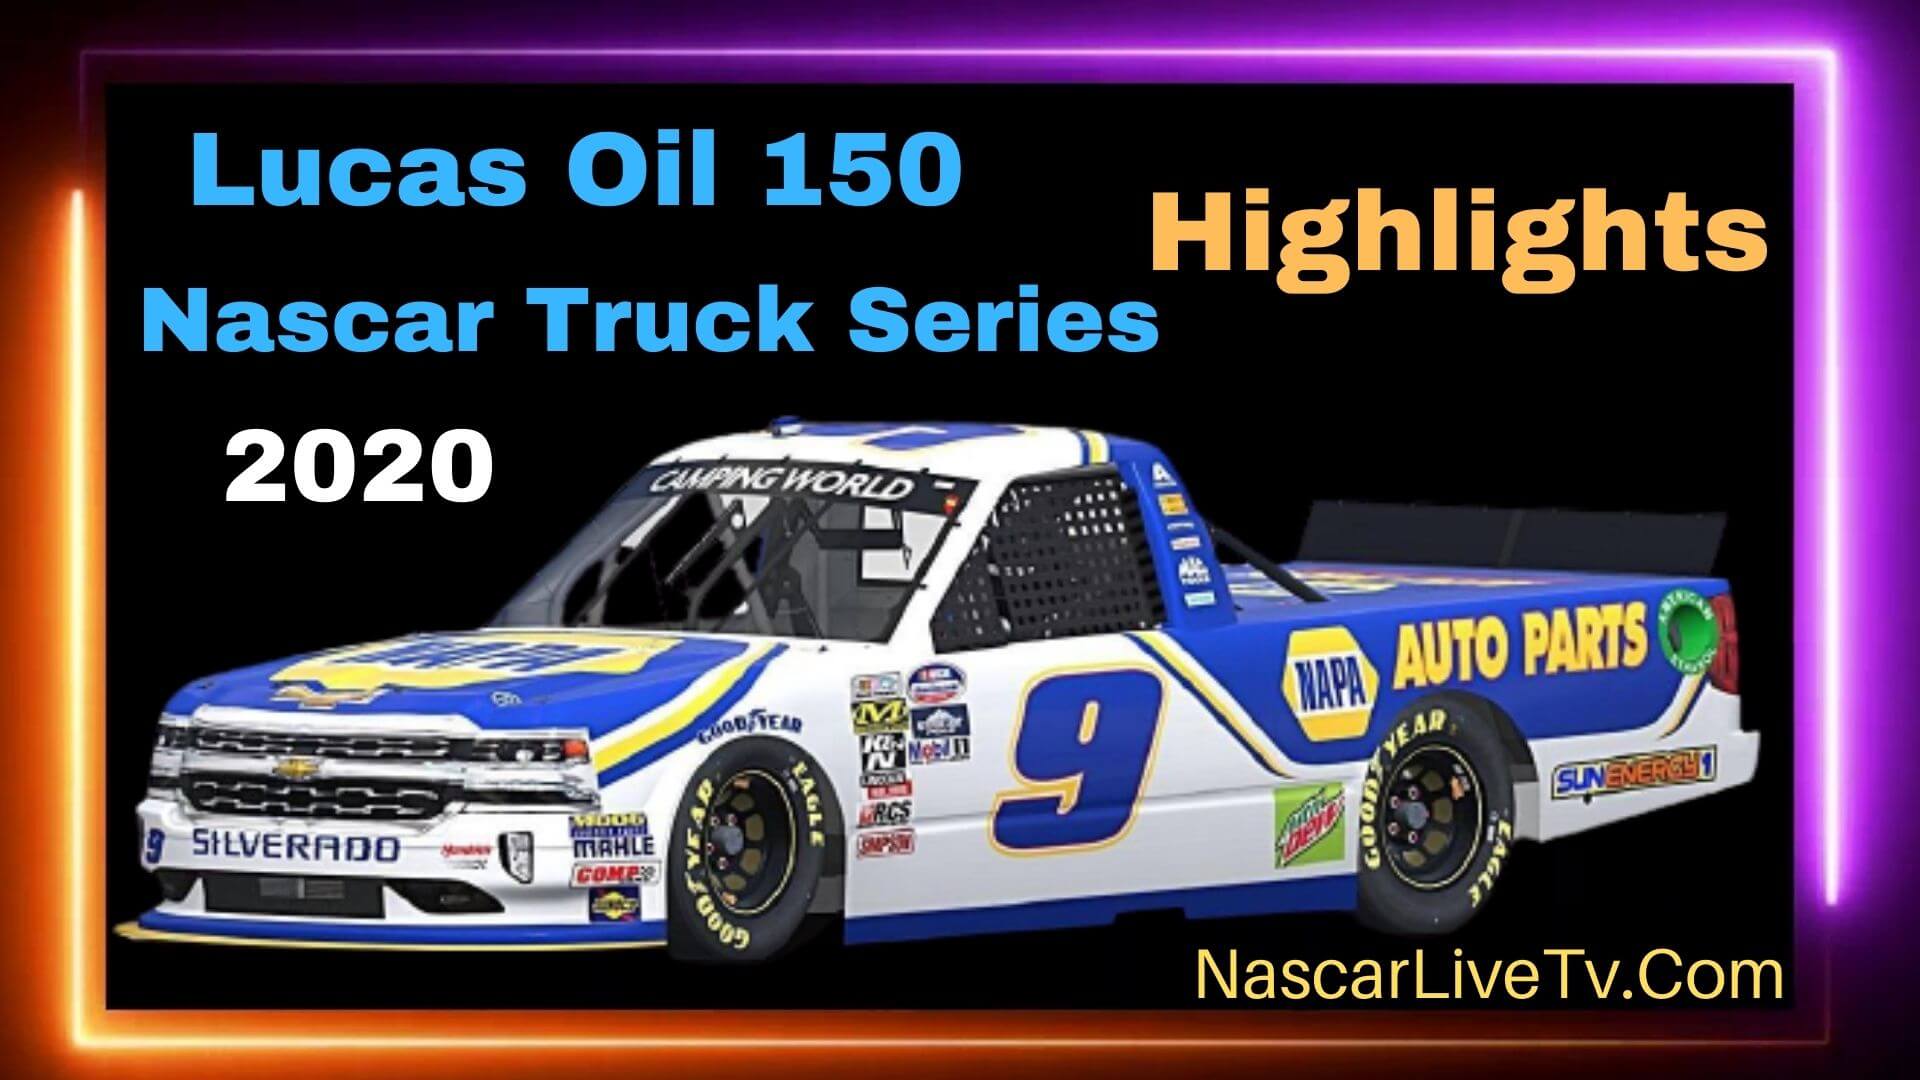 Lucas Oil 150 Nascar Truck Series 2020 Highlights